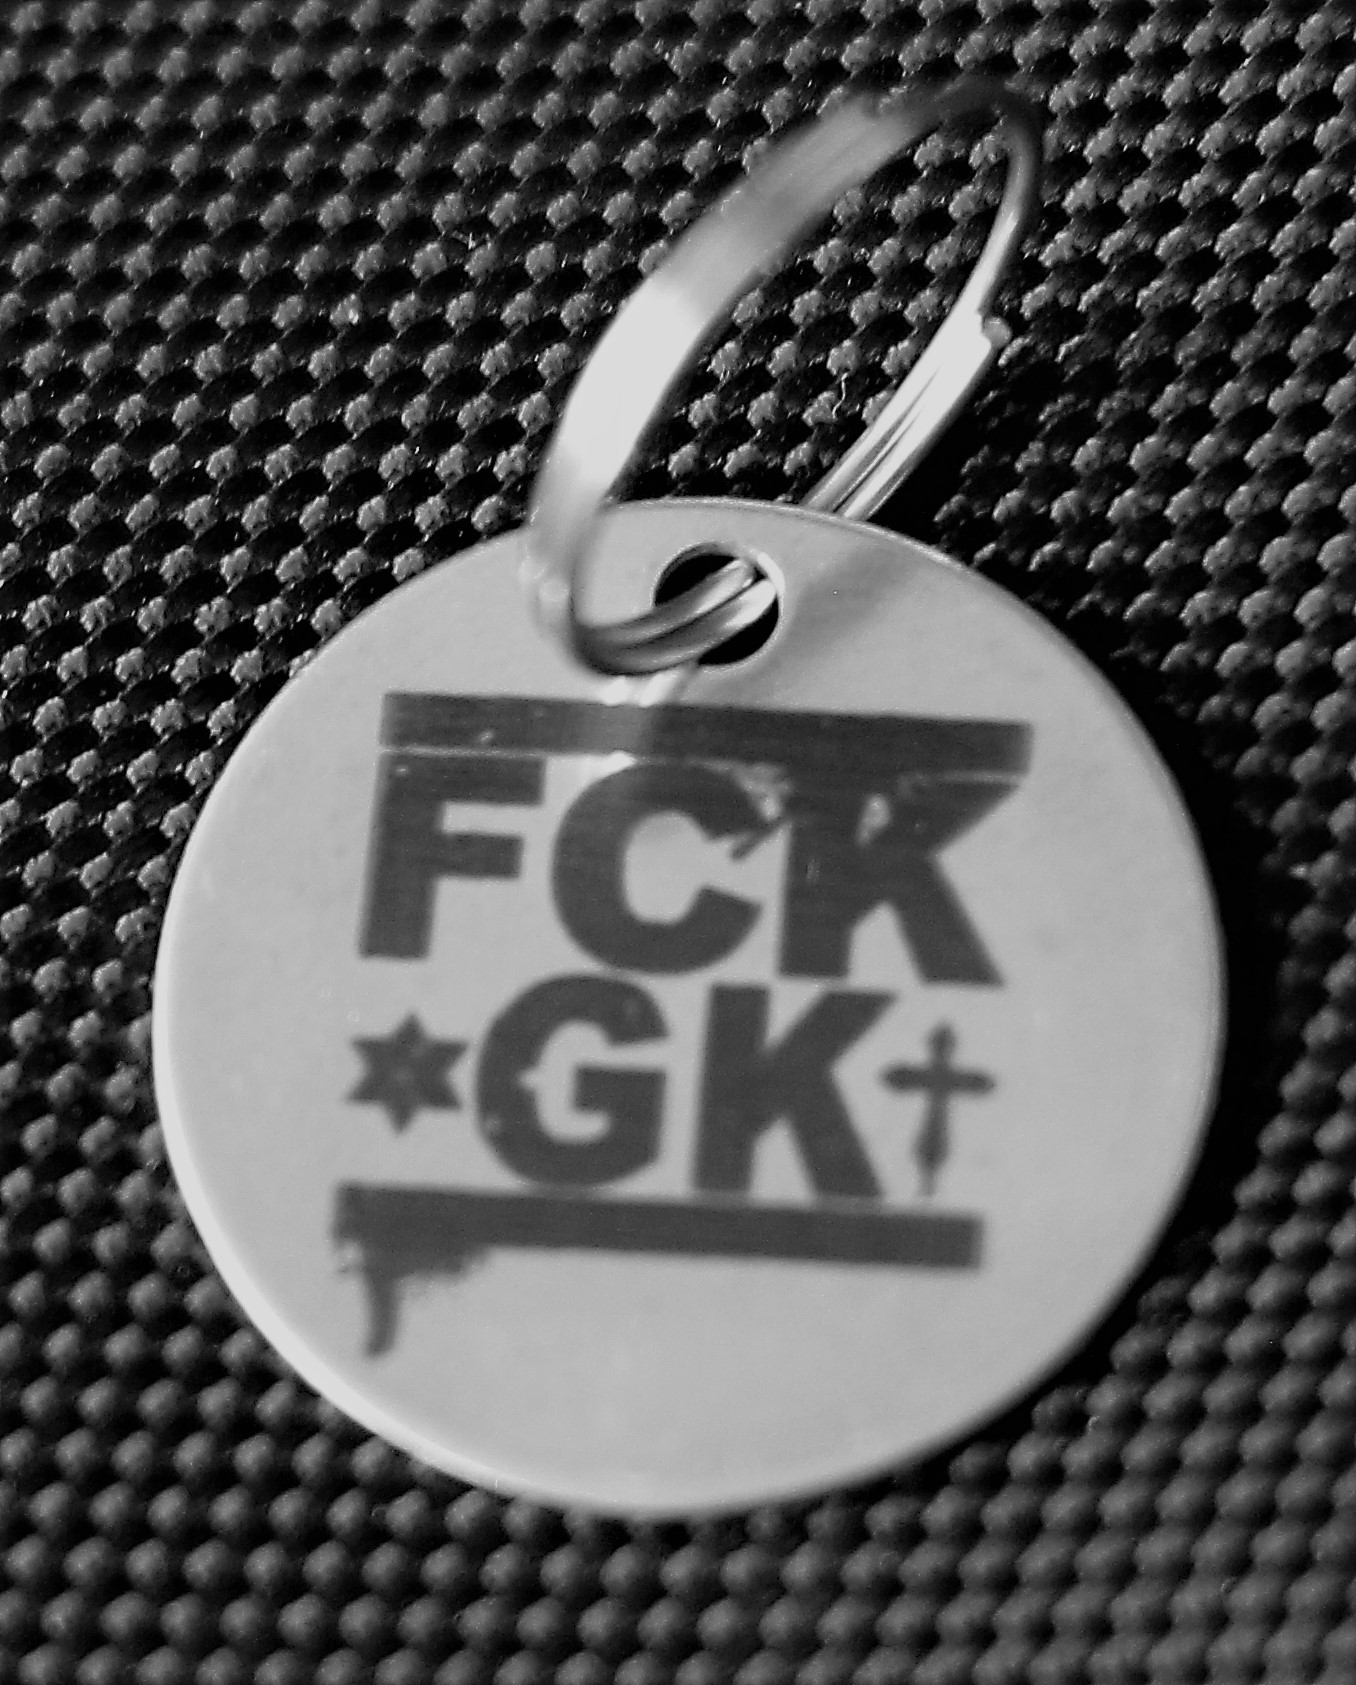 GROBER KNÜPPEL "FCK GK" Edelstahl Marke